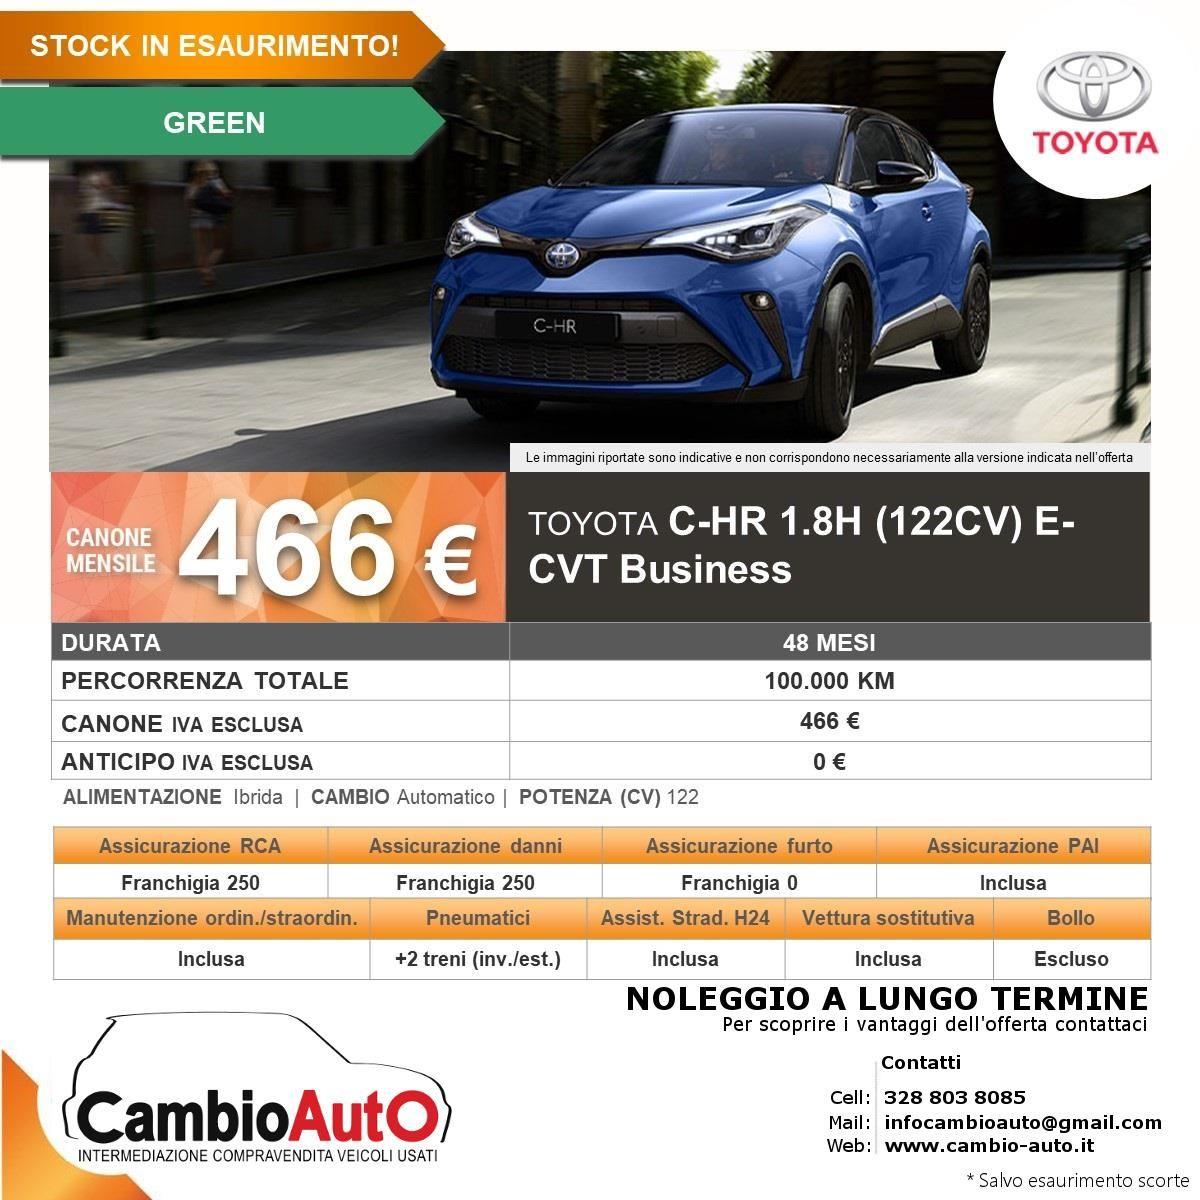 TOYOTA C-HR 1.8 Hybrid E-CVT Business 100.000 km INCLUSI (4 ANNI) ANTICIPO 0€